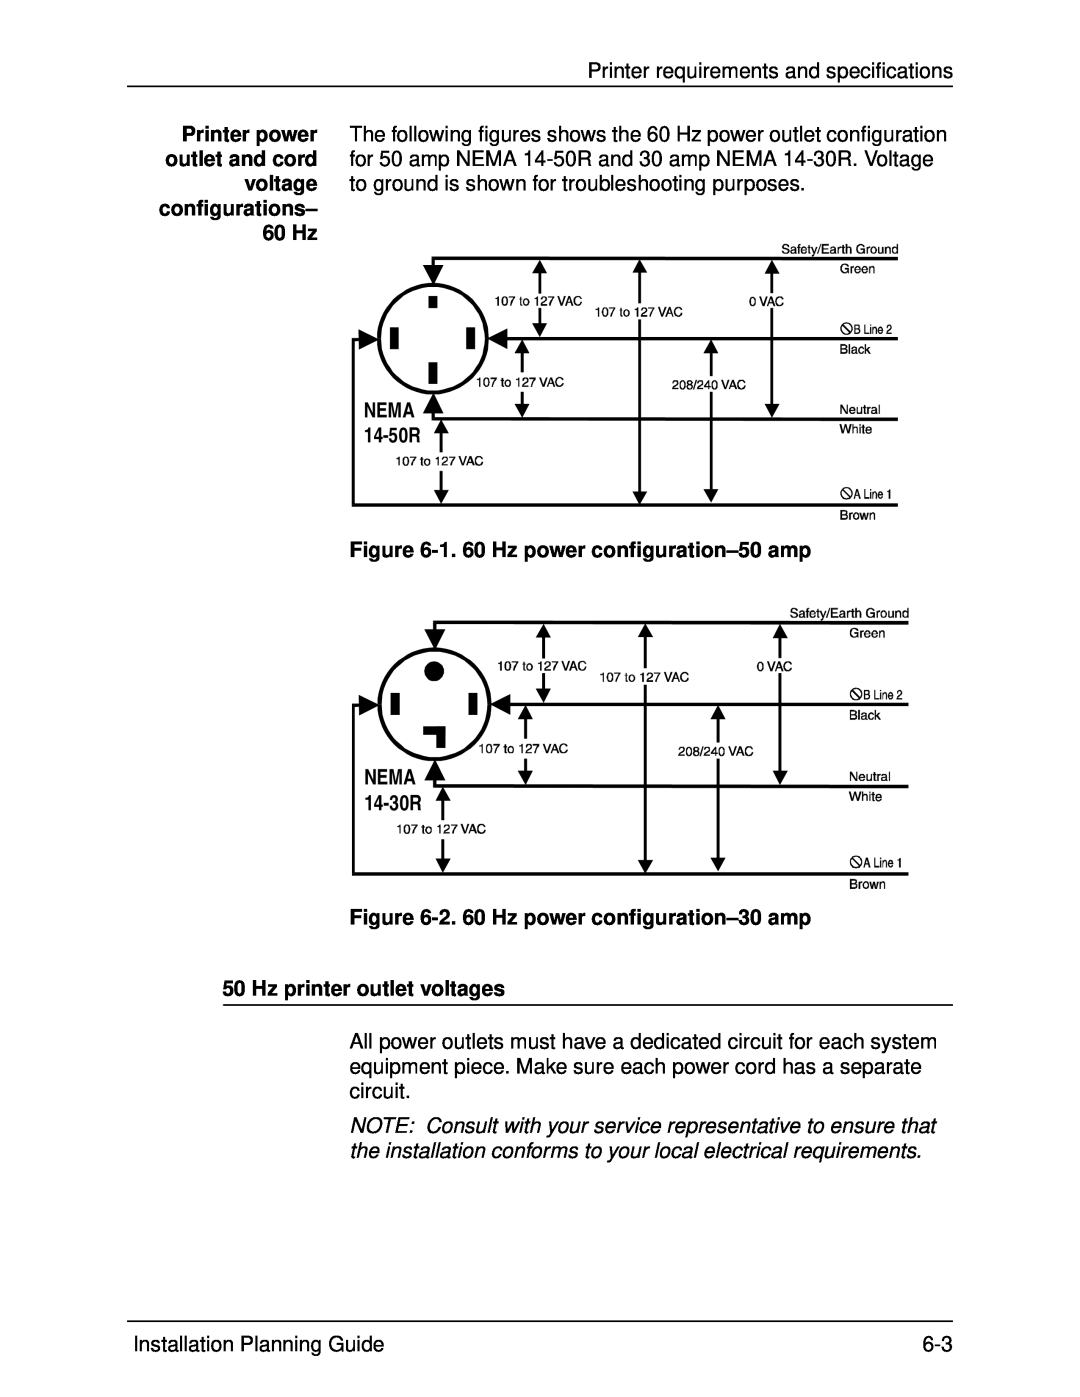 Xerox 115, 100 1. 60 Hz power configuration-50 amp, 2. 60 Hz power configuration-30 amp, Hz printer outlet voltages 